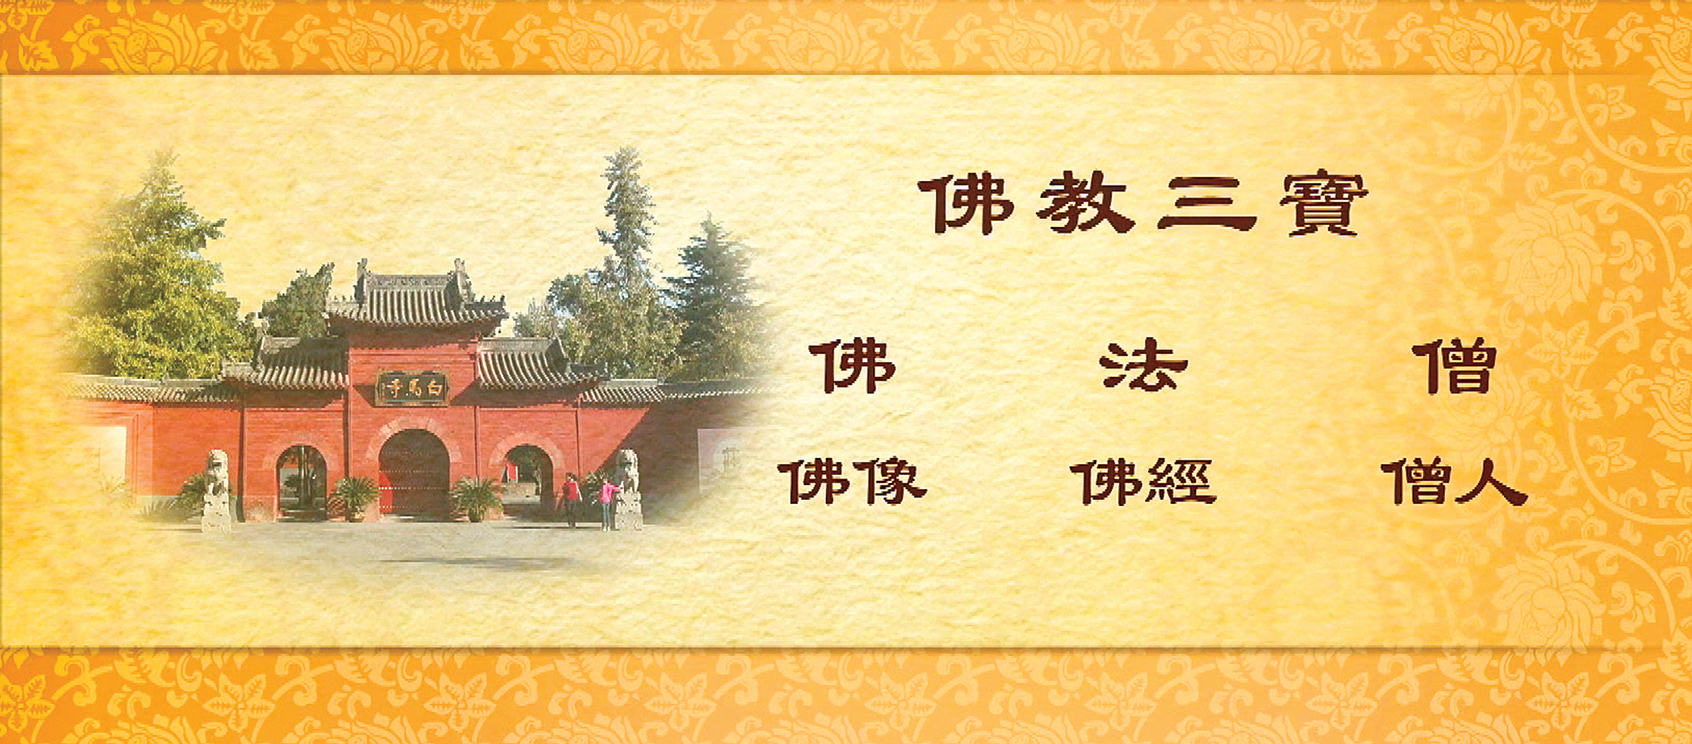 東漢永平十年，白馬寺在洛陽建成，自此佛教三寶（佛、法、僧）齊備，佛教正式傳入了中國。